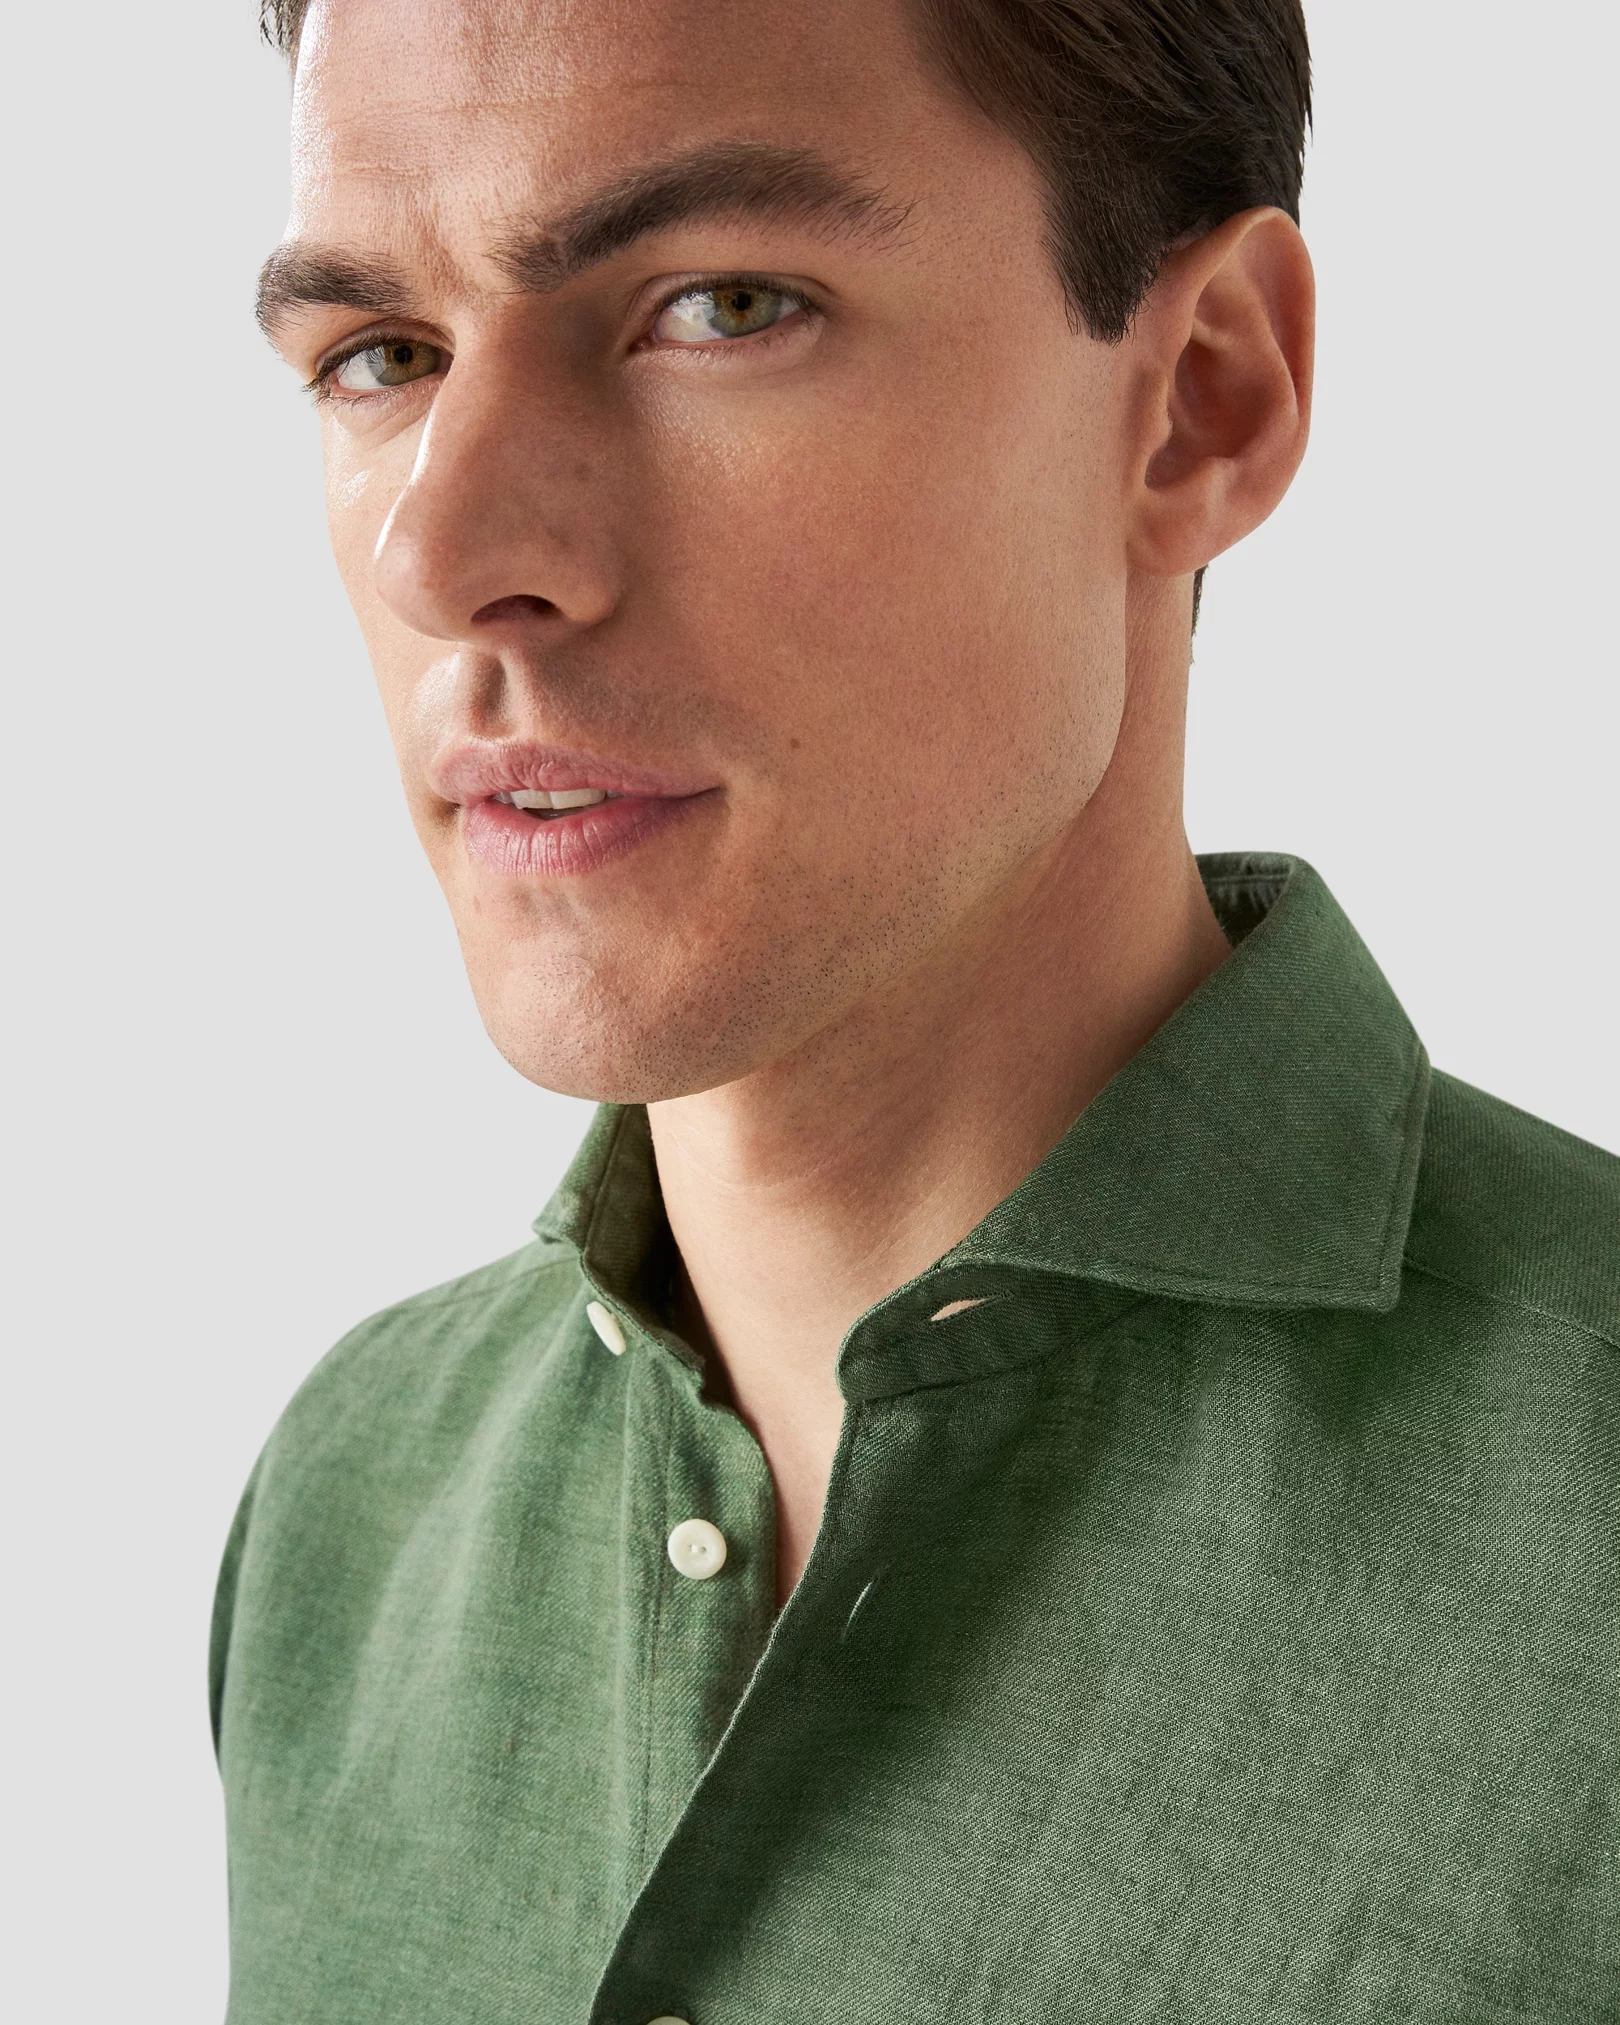 Eton - dark green linen wide spread shirt